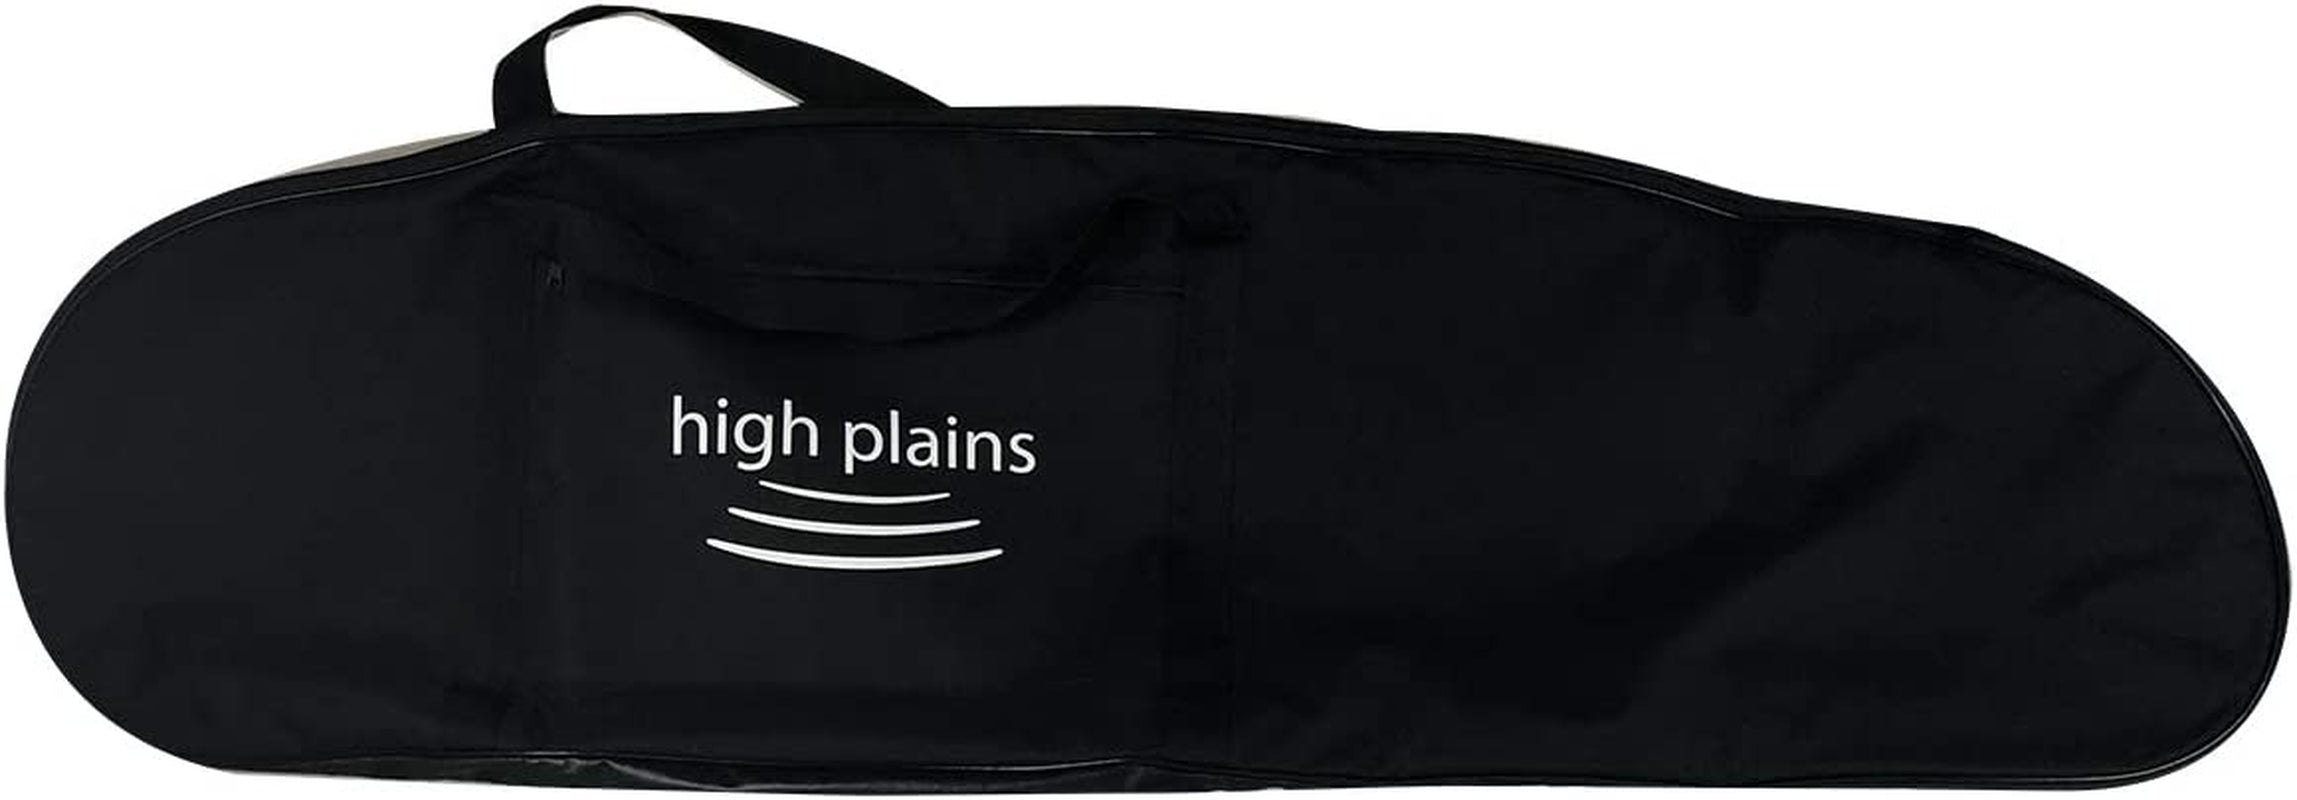 High Plains Large Black Padded Bag for Metal Detector